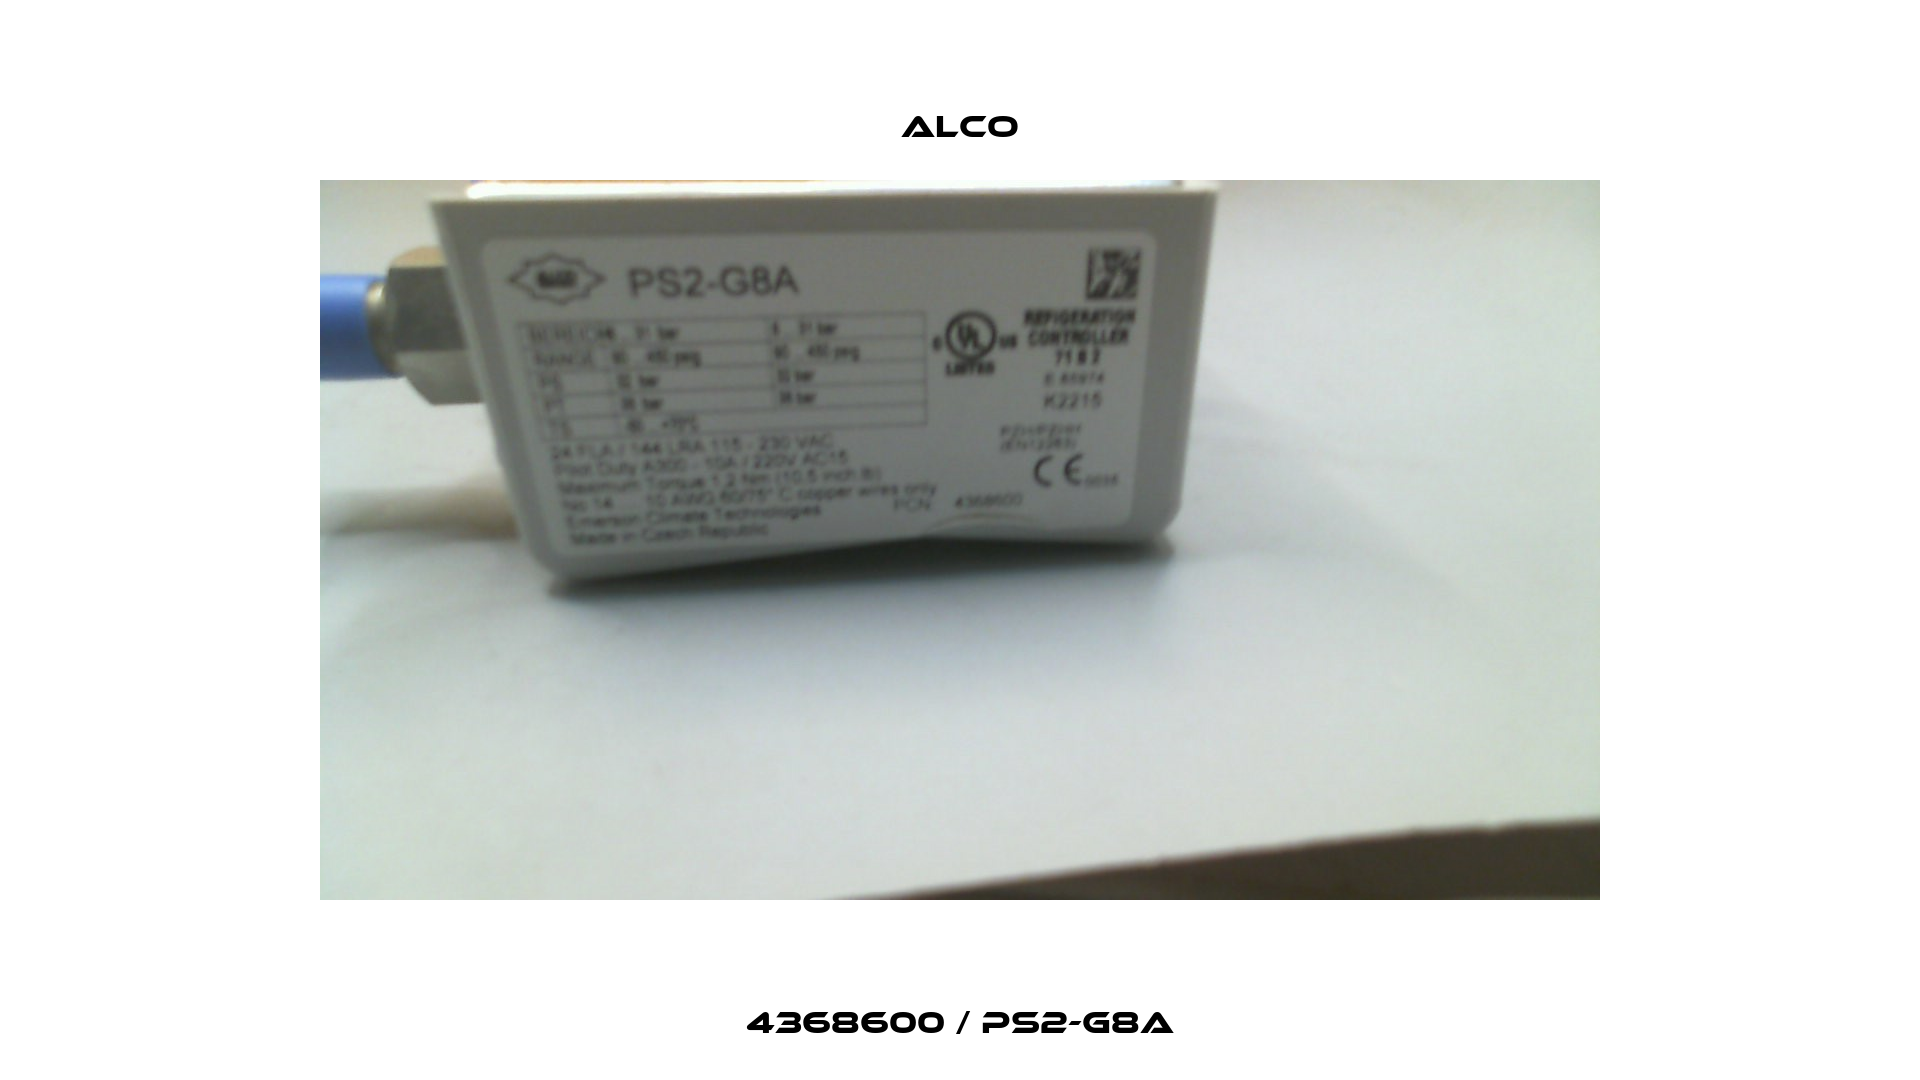 4368600 / PS2-G8A Alco